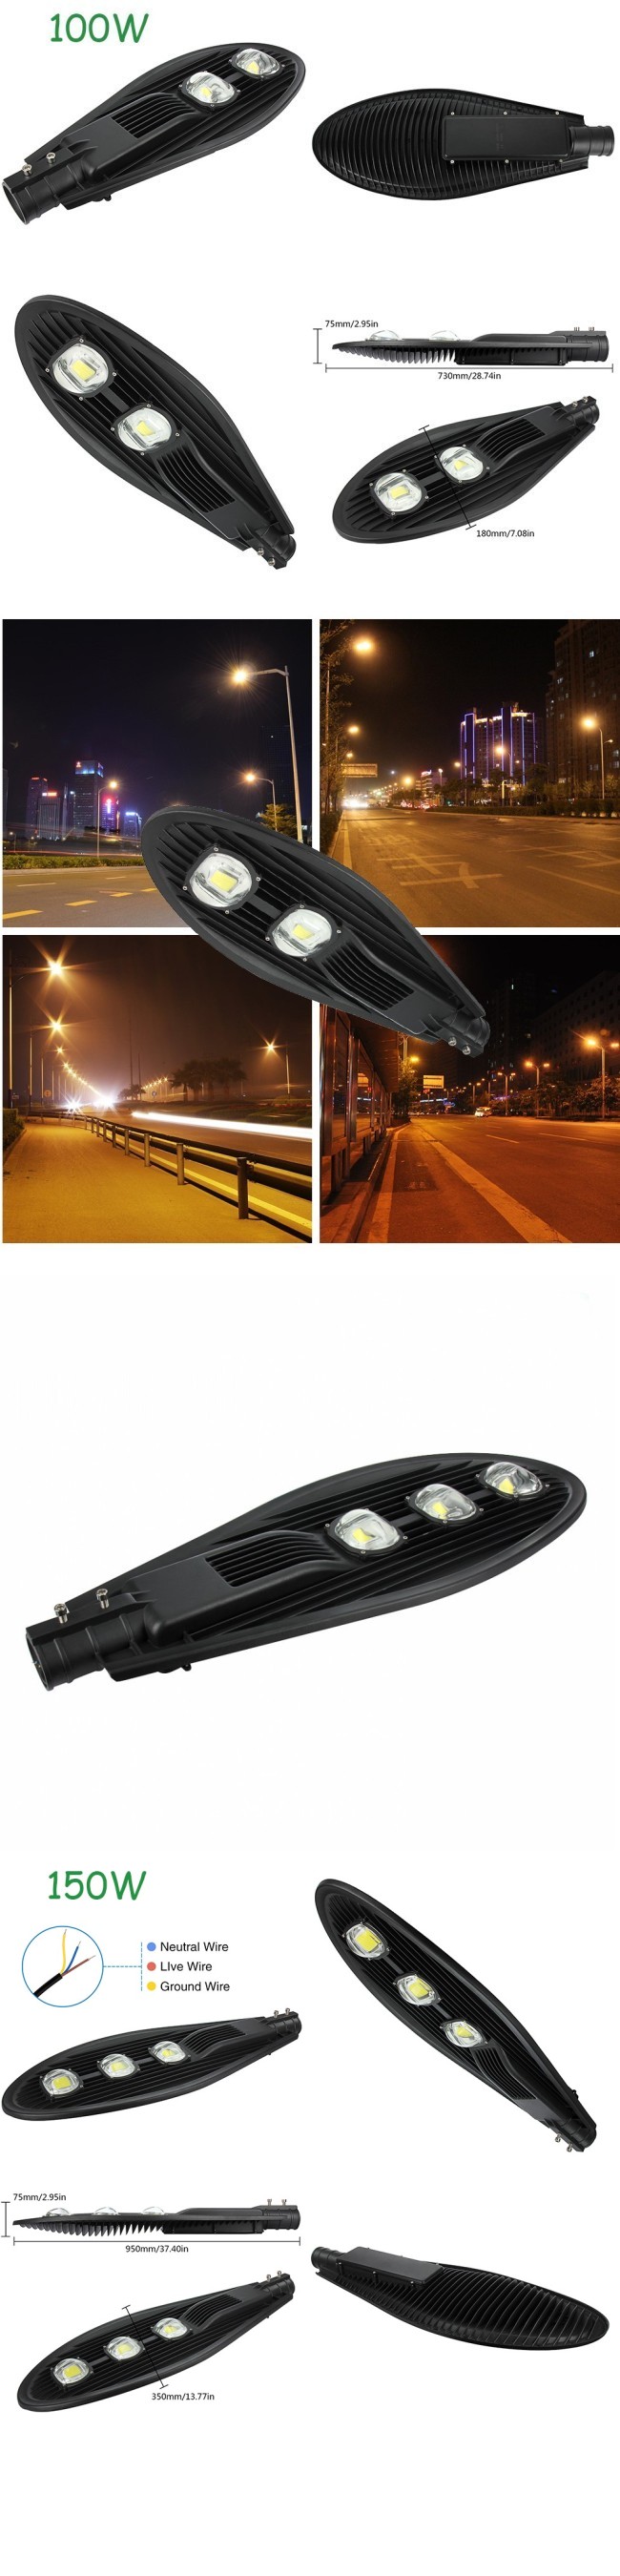 Black Housing Bridgelux COB 40W LED Street Light Fixture Outdoor IP65